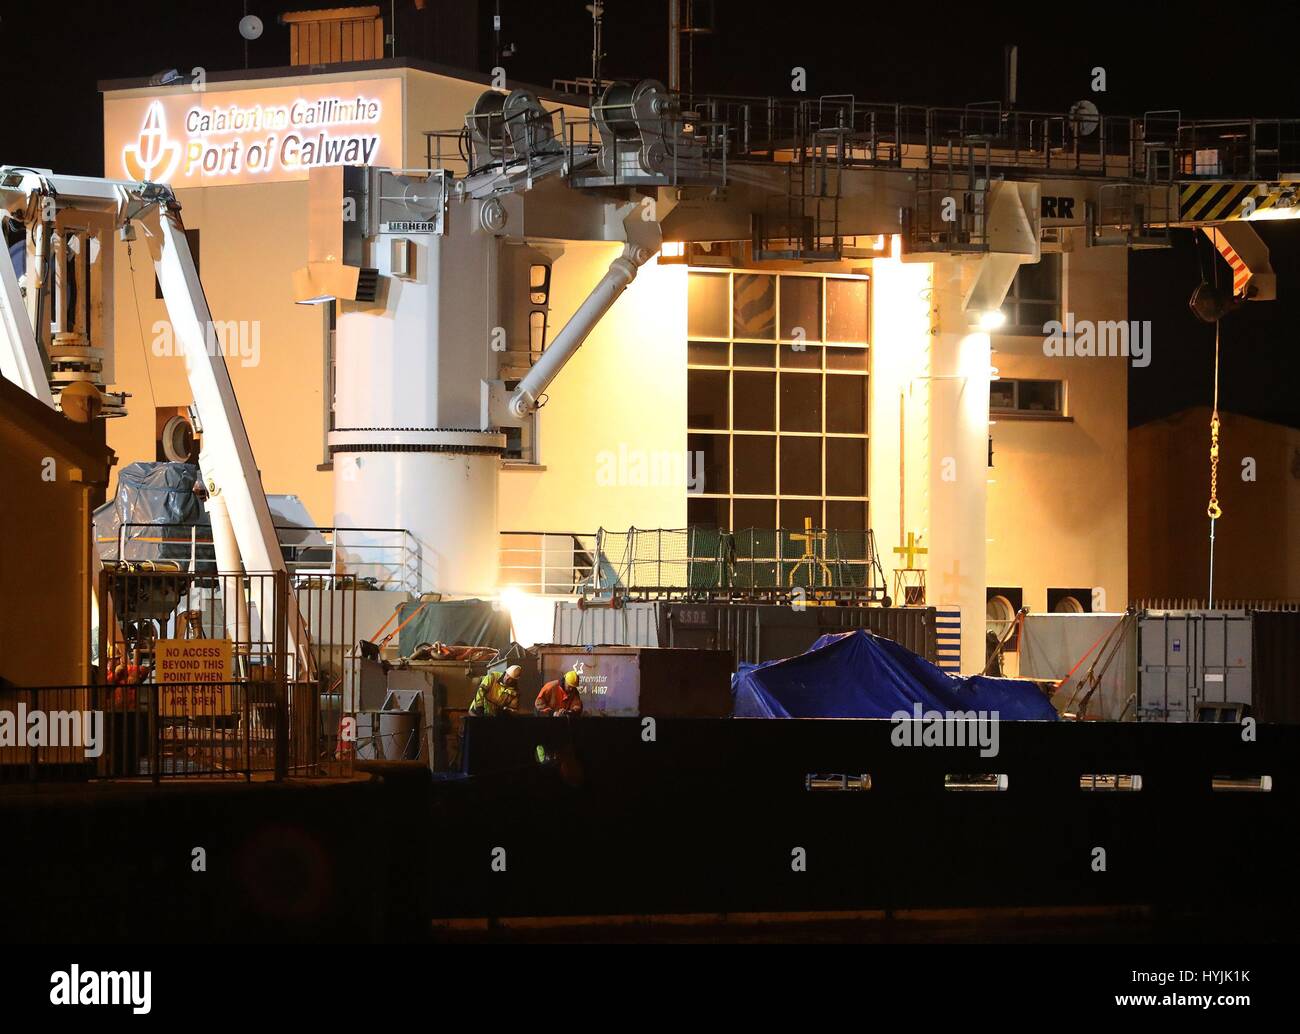 L'épave de l'hélicoptère de la Garde côtière irlandaise, indicatif Rescue 116, qui s'est écrasé au large de la côte ouest de l'Irlande 24 mars arrive au port de Galway à bord du navire irlandais Granuaile feux après que l'avion a été retrouvé dans les fonds marins près de Blackrock. Banque D'Images